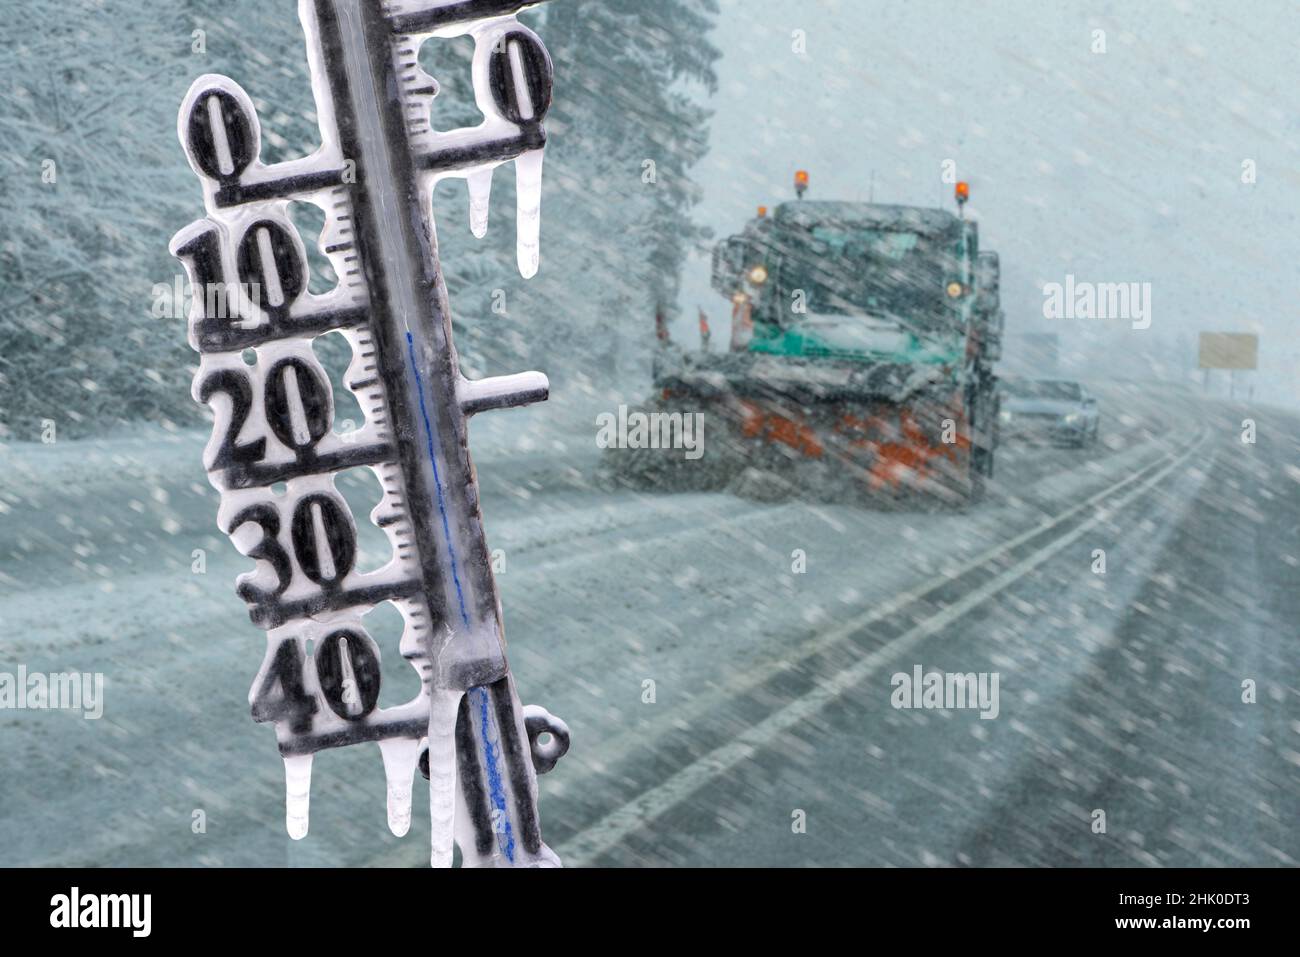 température froide avec neige et glace en hiver sur route. Banque D'Images